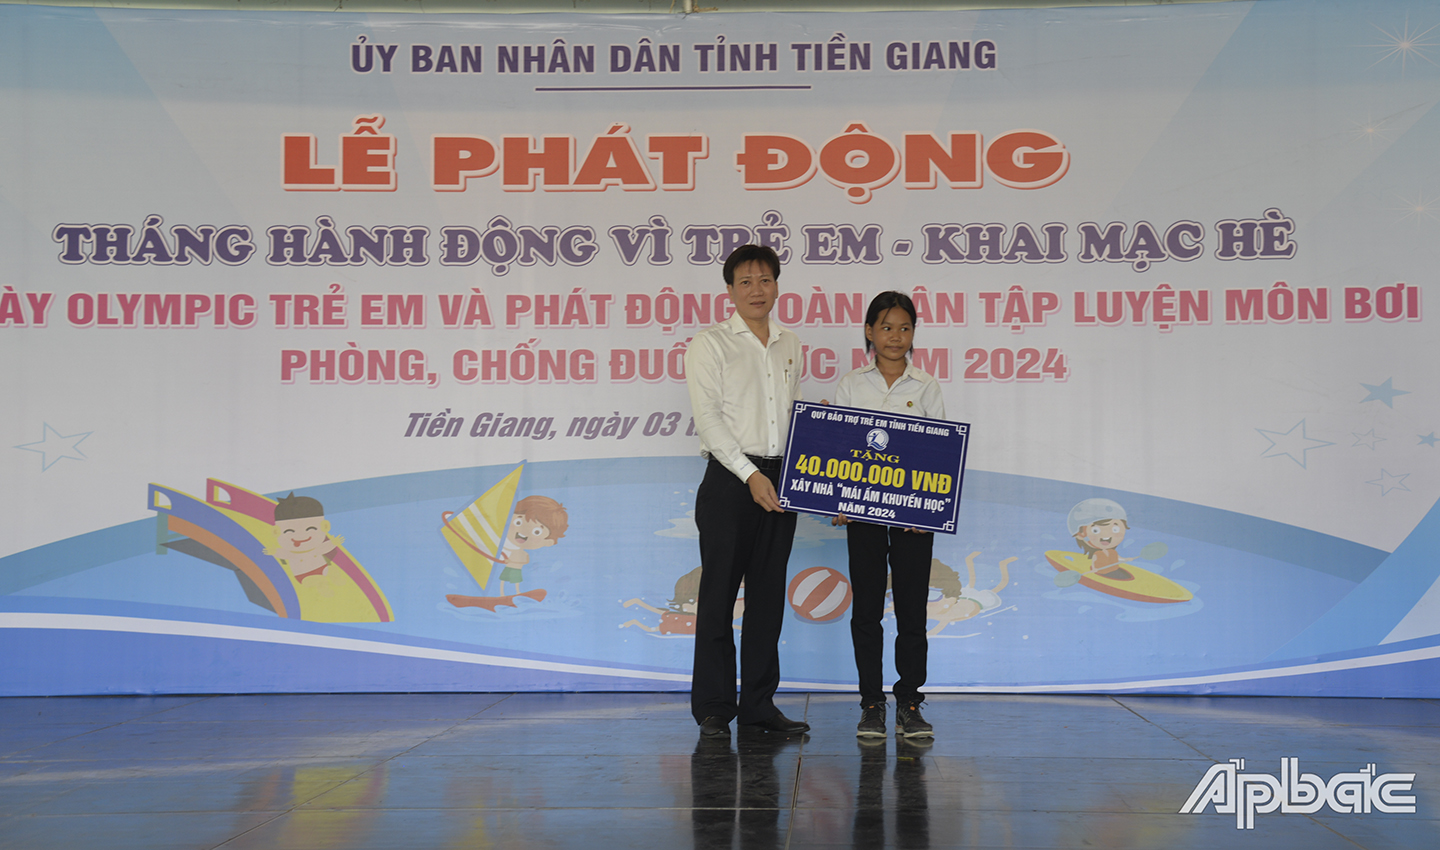 Lãnh đạo Công ty Bảo Việt nhân thọ Tiền Giang trao bảng tượng trưng mái ấm khuyến học cho học sinh khó khăn về nhà ở